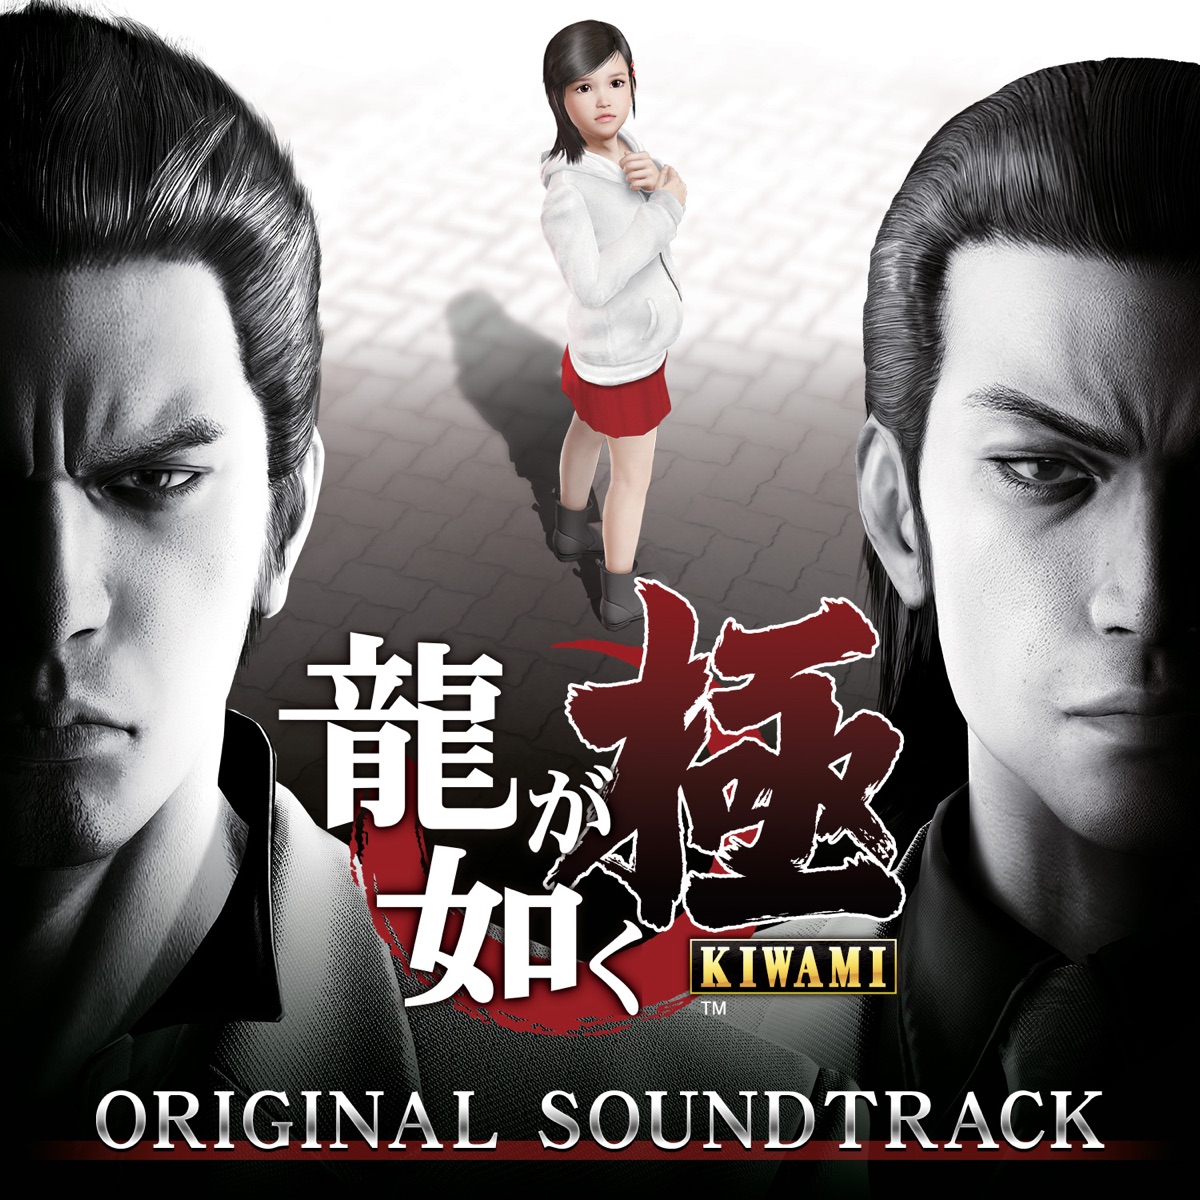 Yakuza - Baka Mitai Duet version with lyrics and English